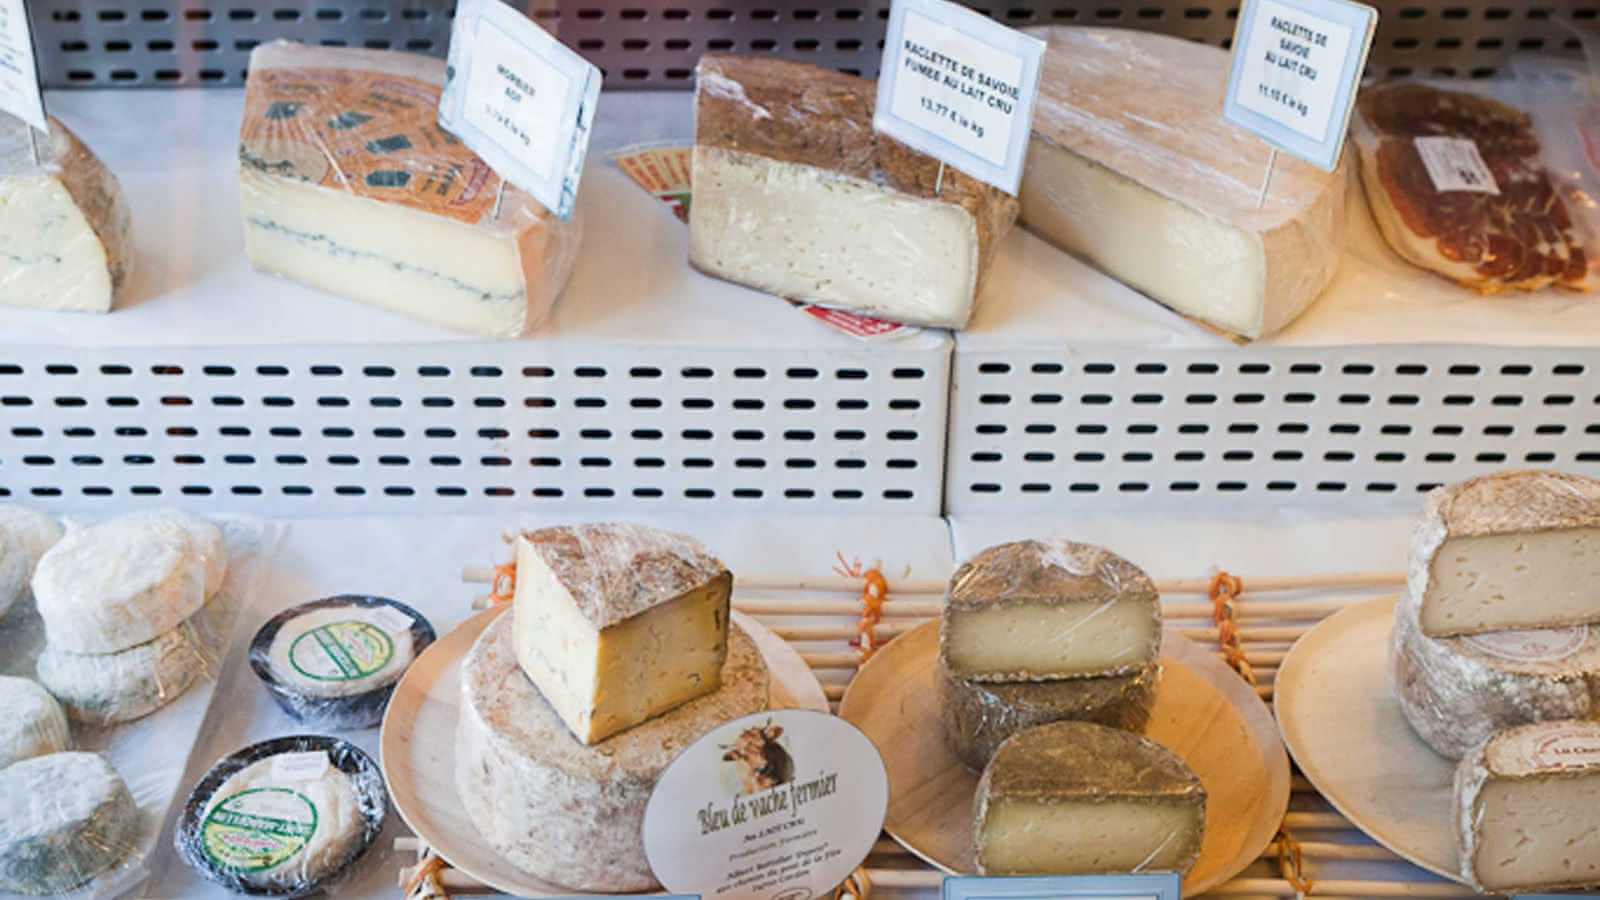 Reblochon, Beaufort AOP, tomme de Savoie and other cheeses